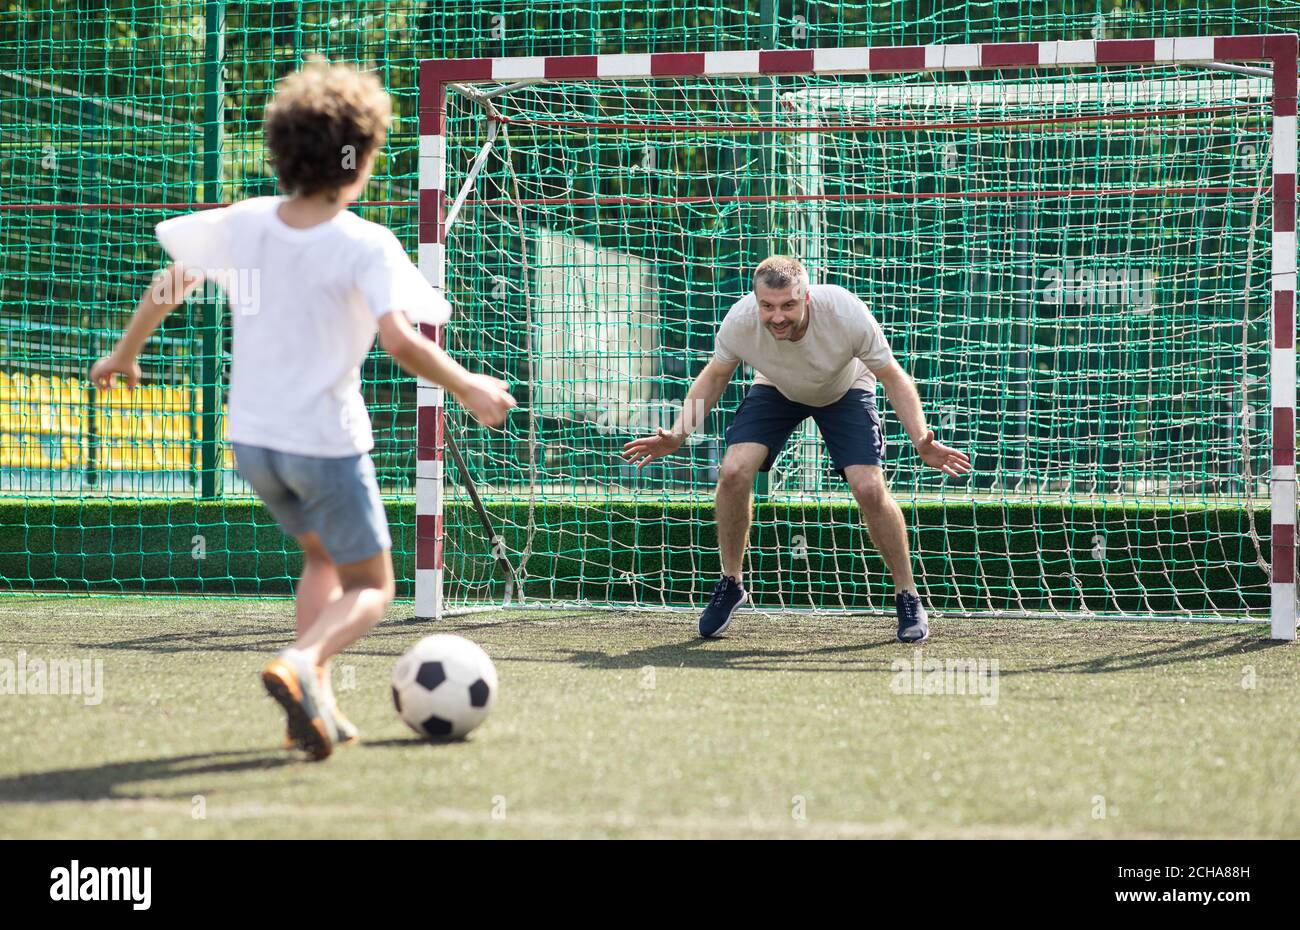 Niño jugando al fútbol, pateando el balón al gol Foto de stock